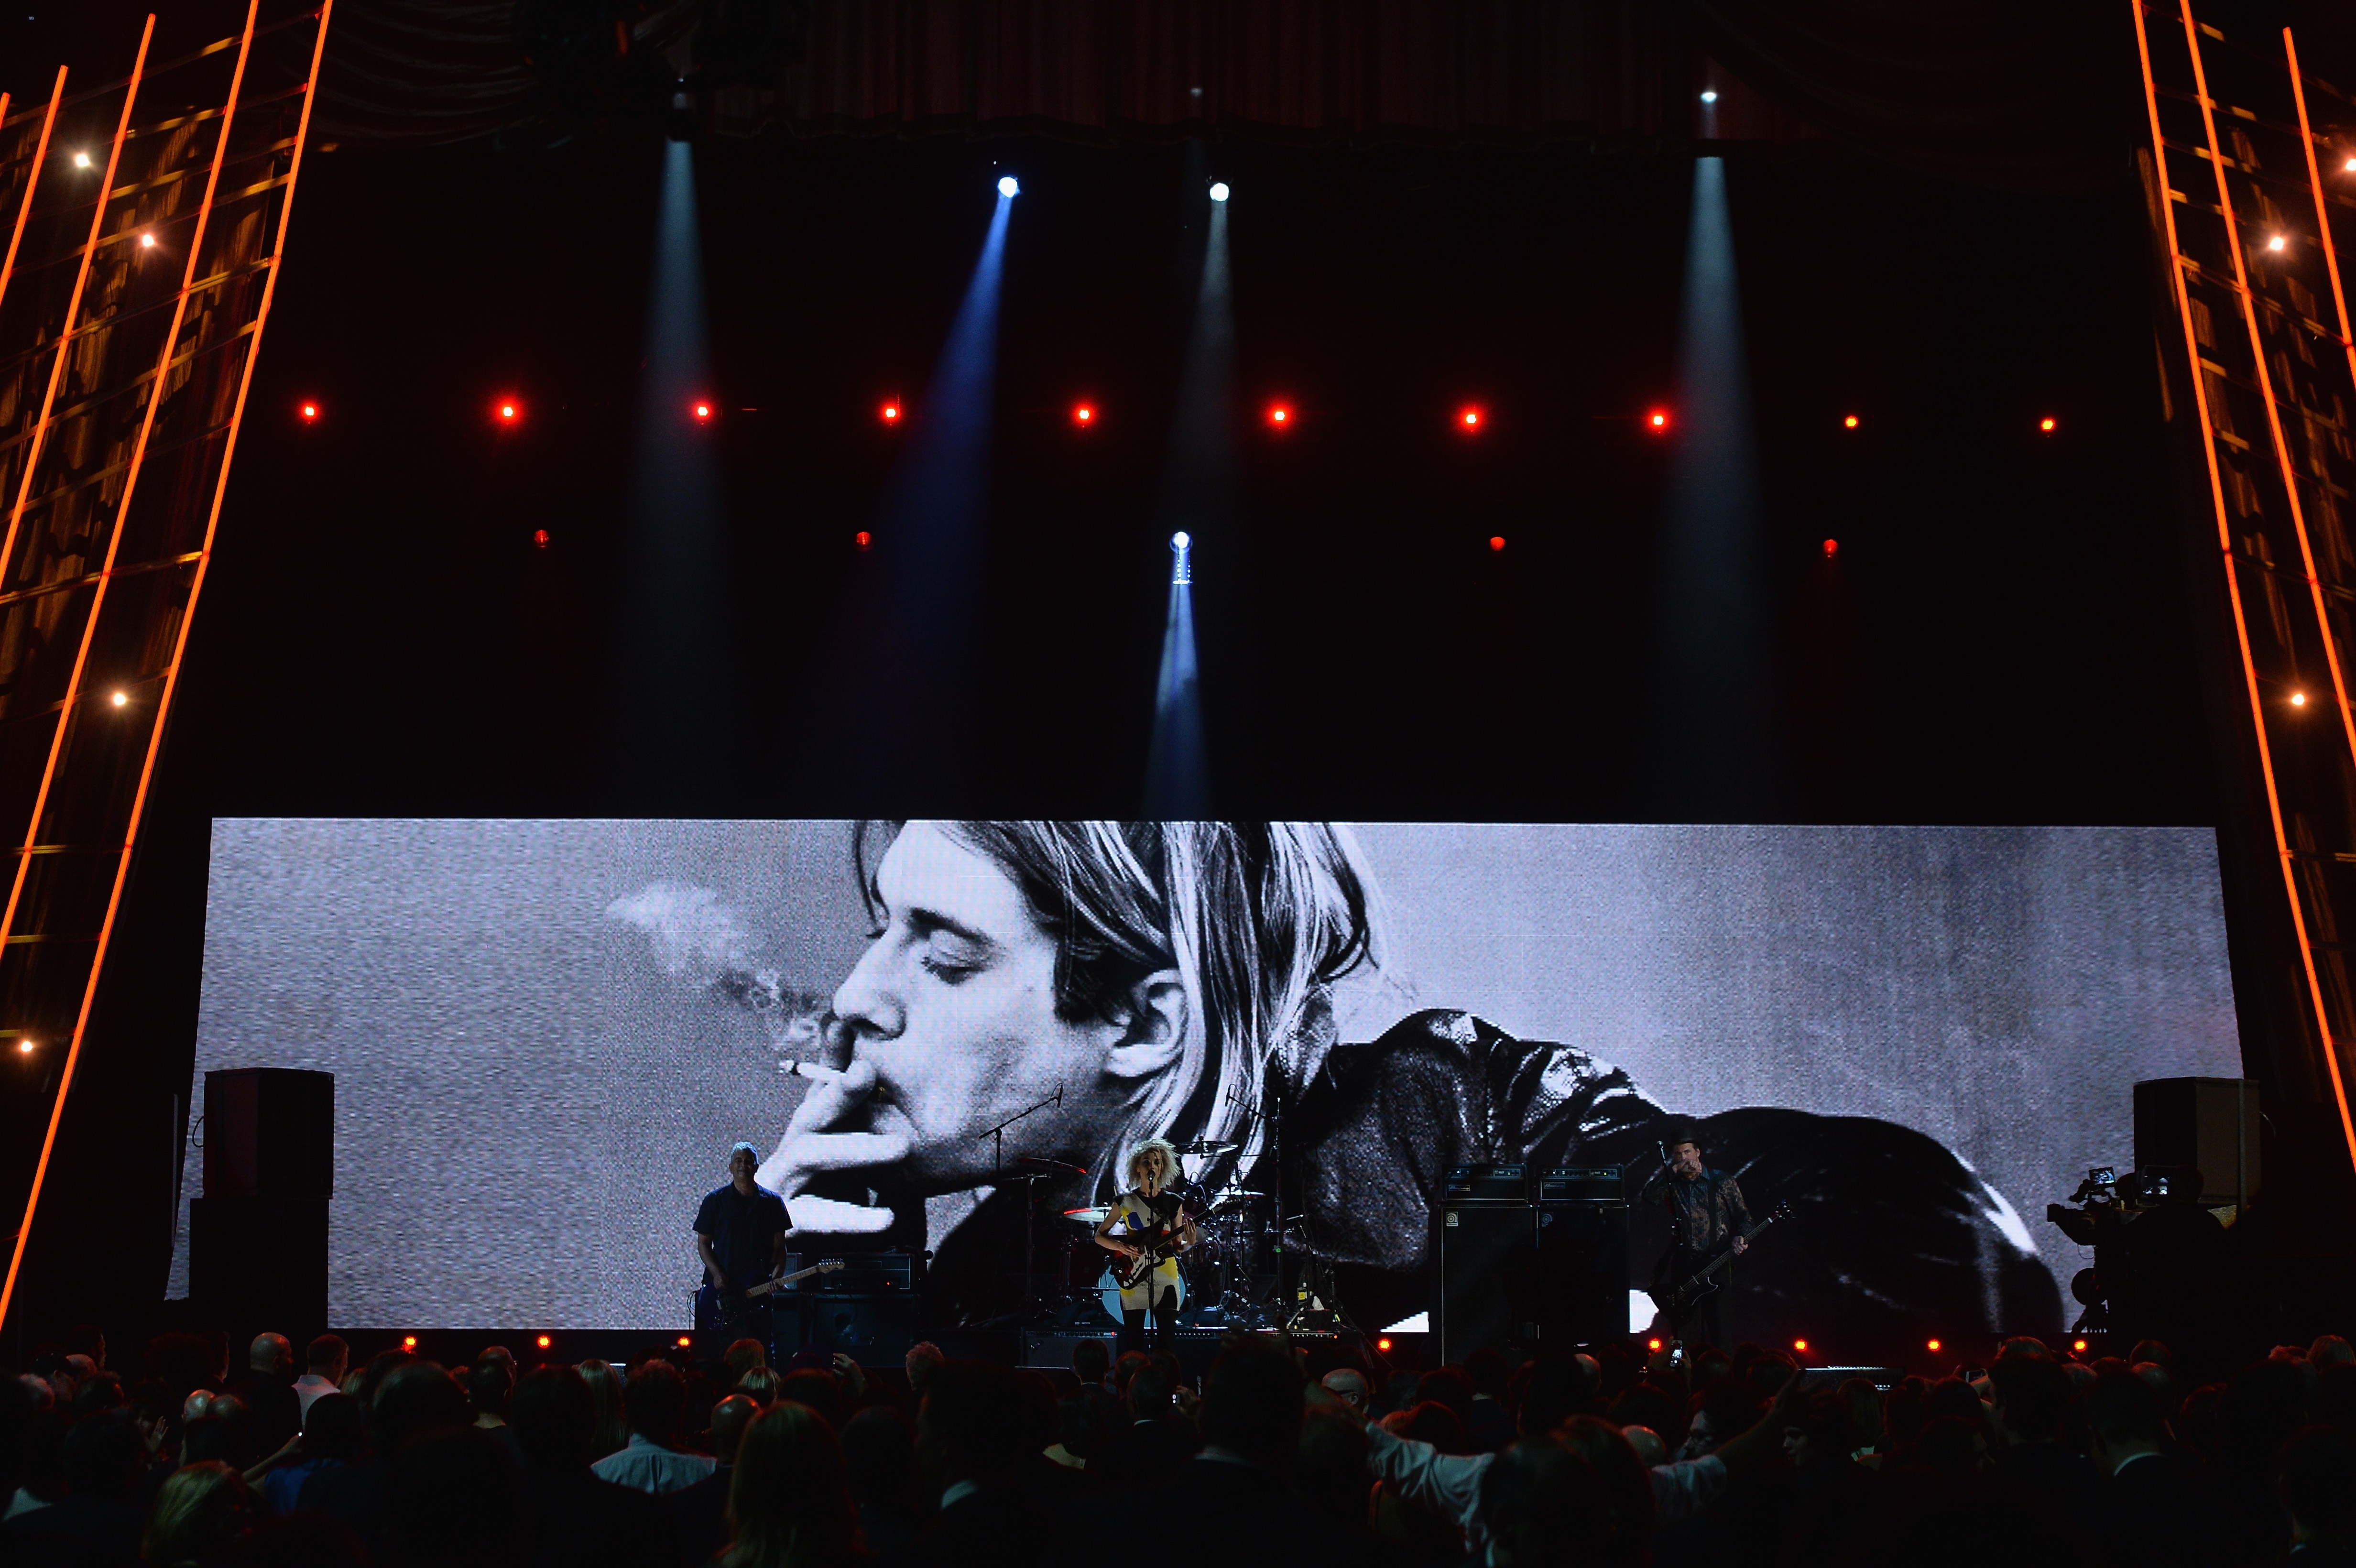 New York, aprile 2014. Pat Smear, St. Vincent e Krist Novoselic, bassista dei Nirvana, suonano un omaggio a Kurt Cobain durante la cerimonia d'ingresso dei Nirvana alla Rock And Roll Hall Of Fame 